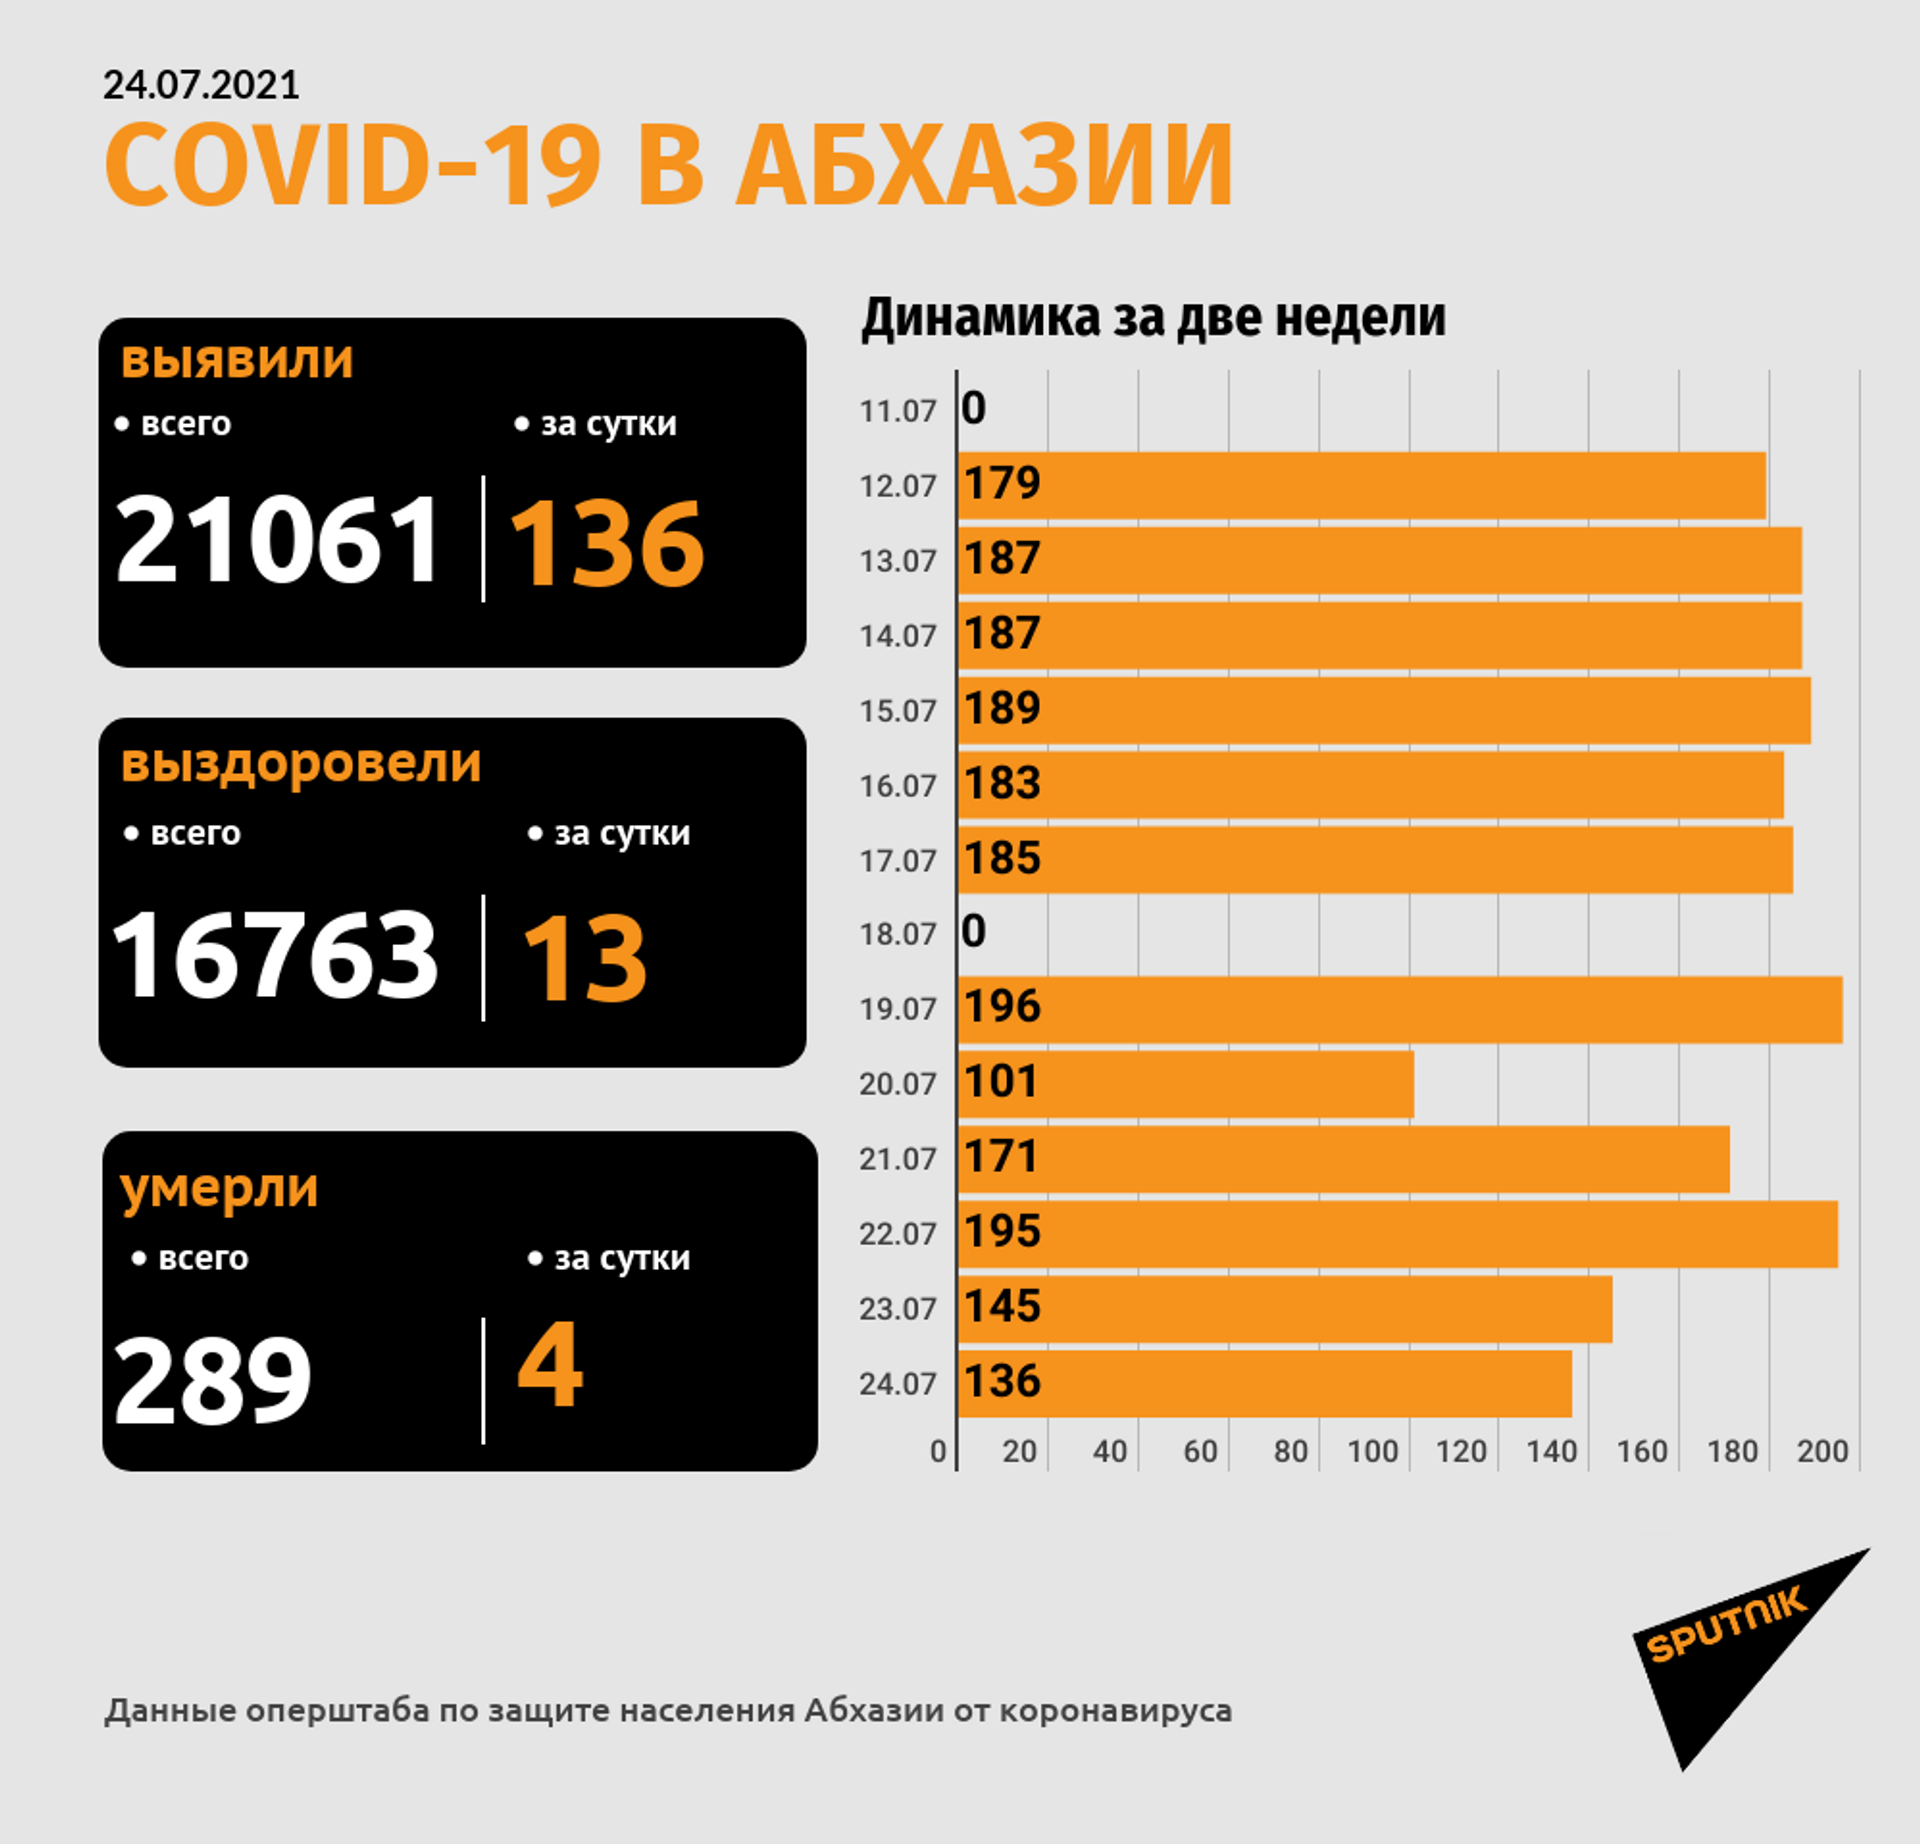 Четыре человека с COVID-19 скончались в медучреждениях Абхазии - Sputnik Абхазия, 1920, 24.07.2021